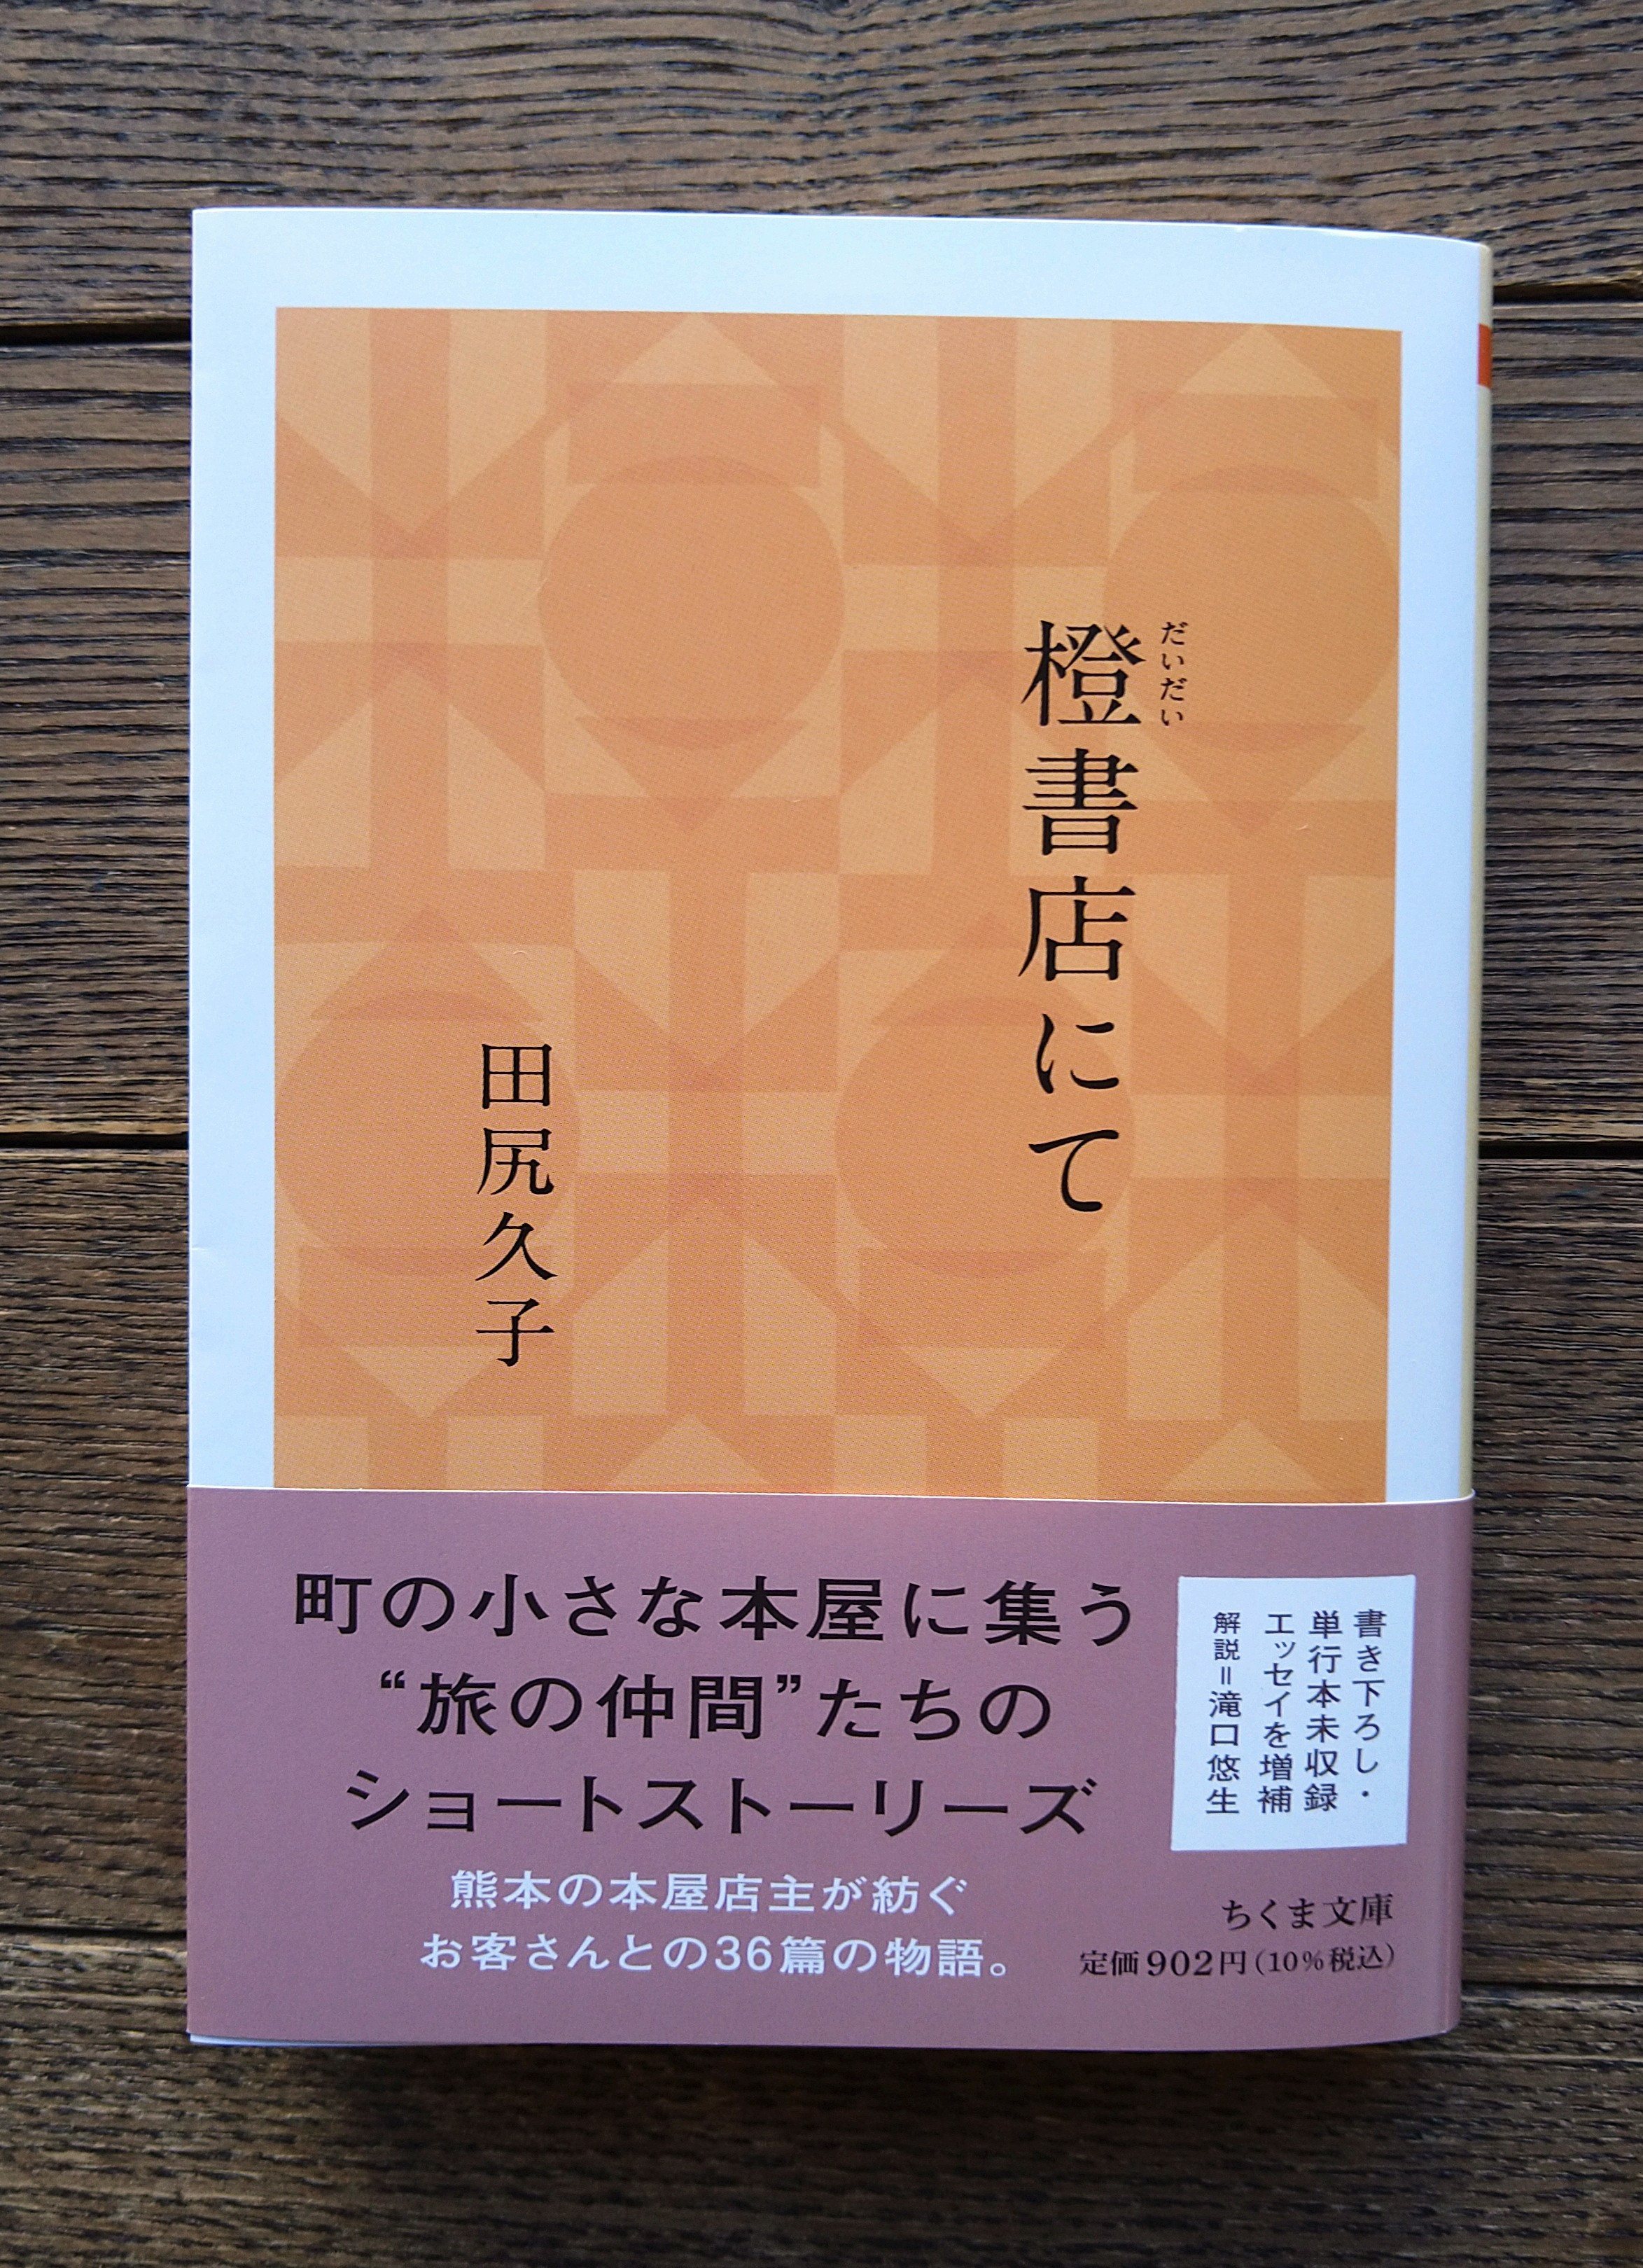 『橙書店にて』文庫版発売のお知らせ